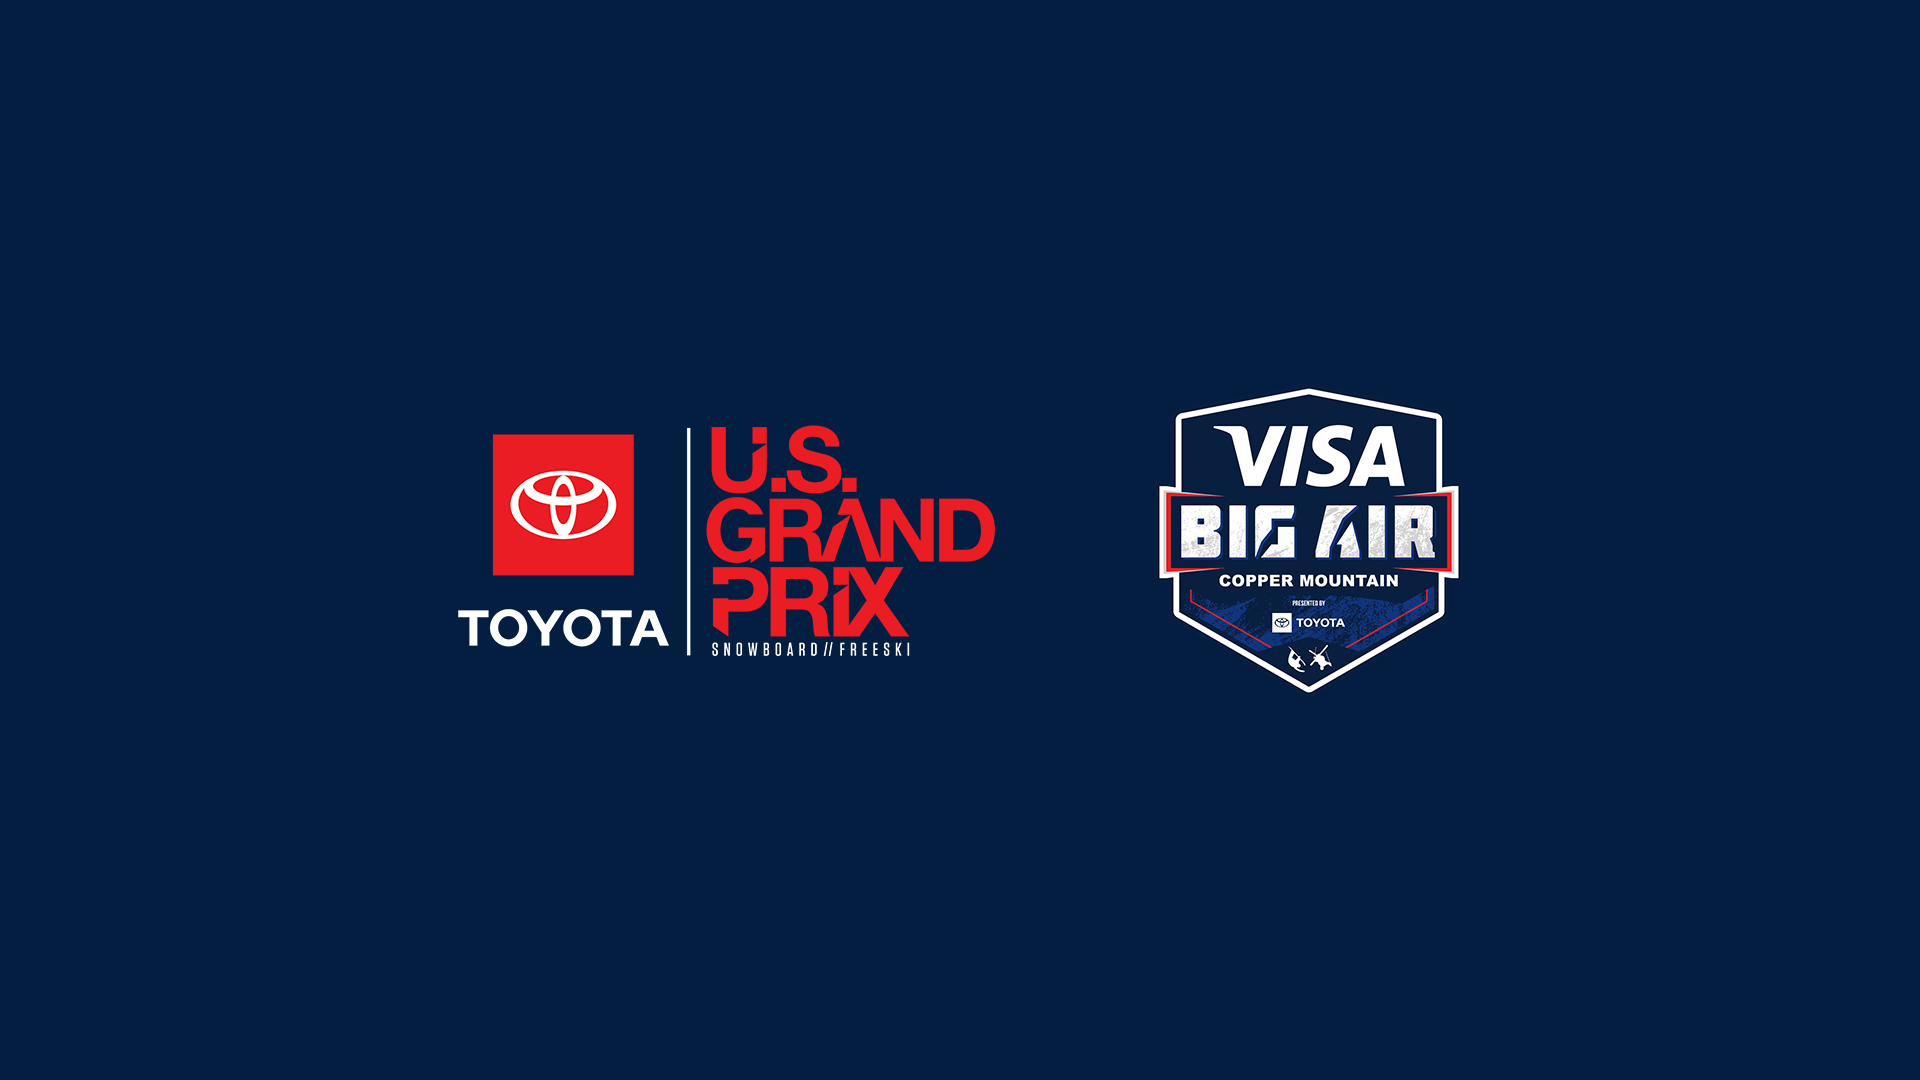 Grand Prix + Visa Big Air Logos